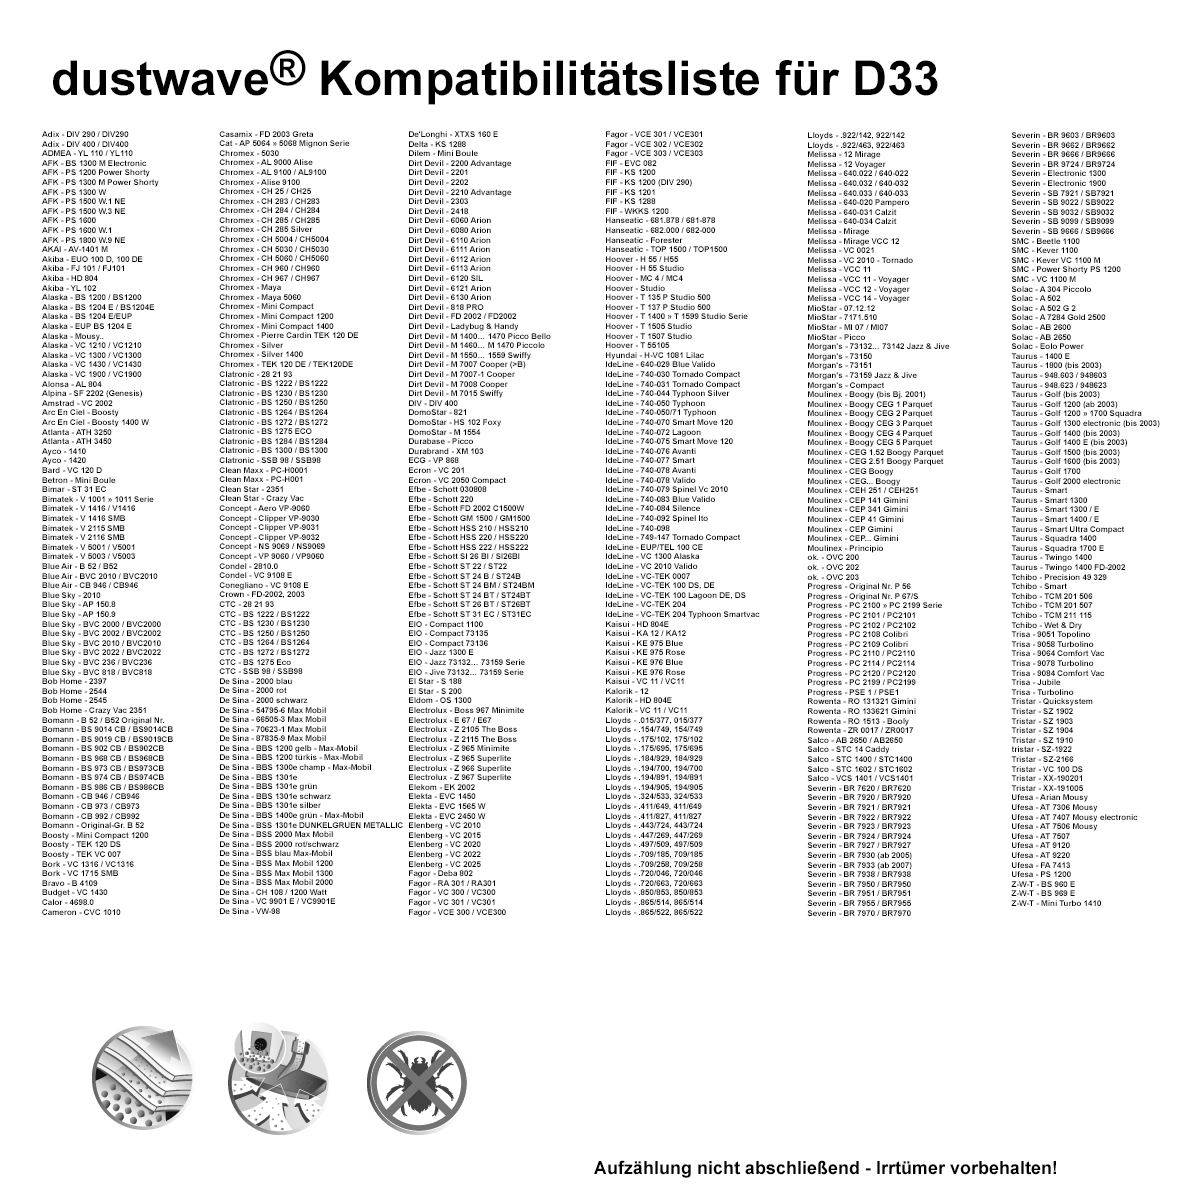 Dustwave® 20 Staubsaugerbeutel für Alaska BS 1200 / BS1200 - hocheffizient mit Hygieneverschluss - Made in Germany